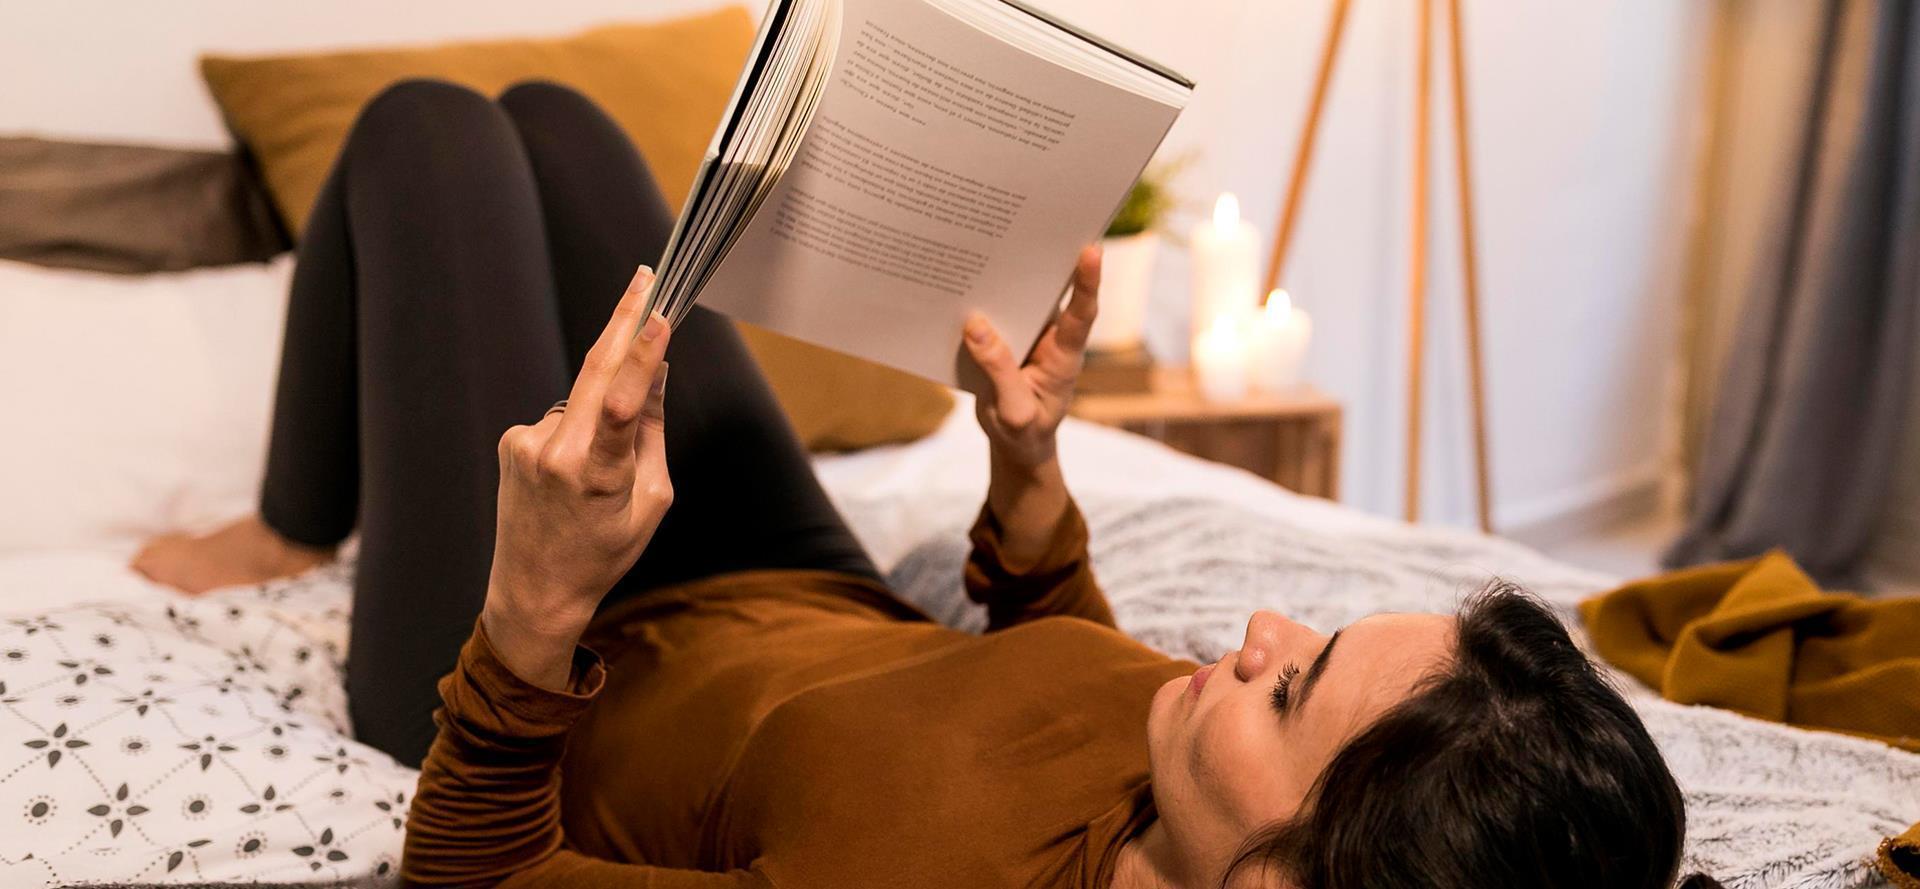 7 érdekes tény az elalvás előtti olvasásról